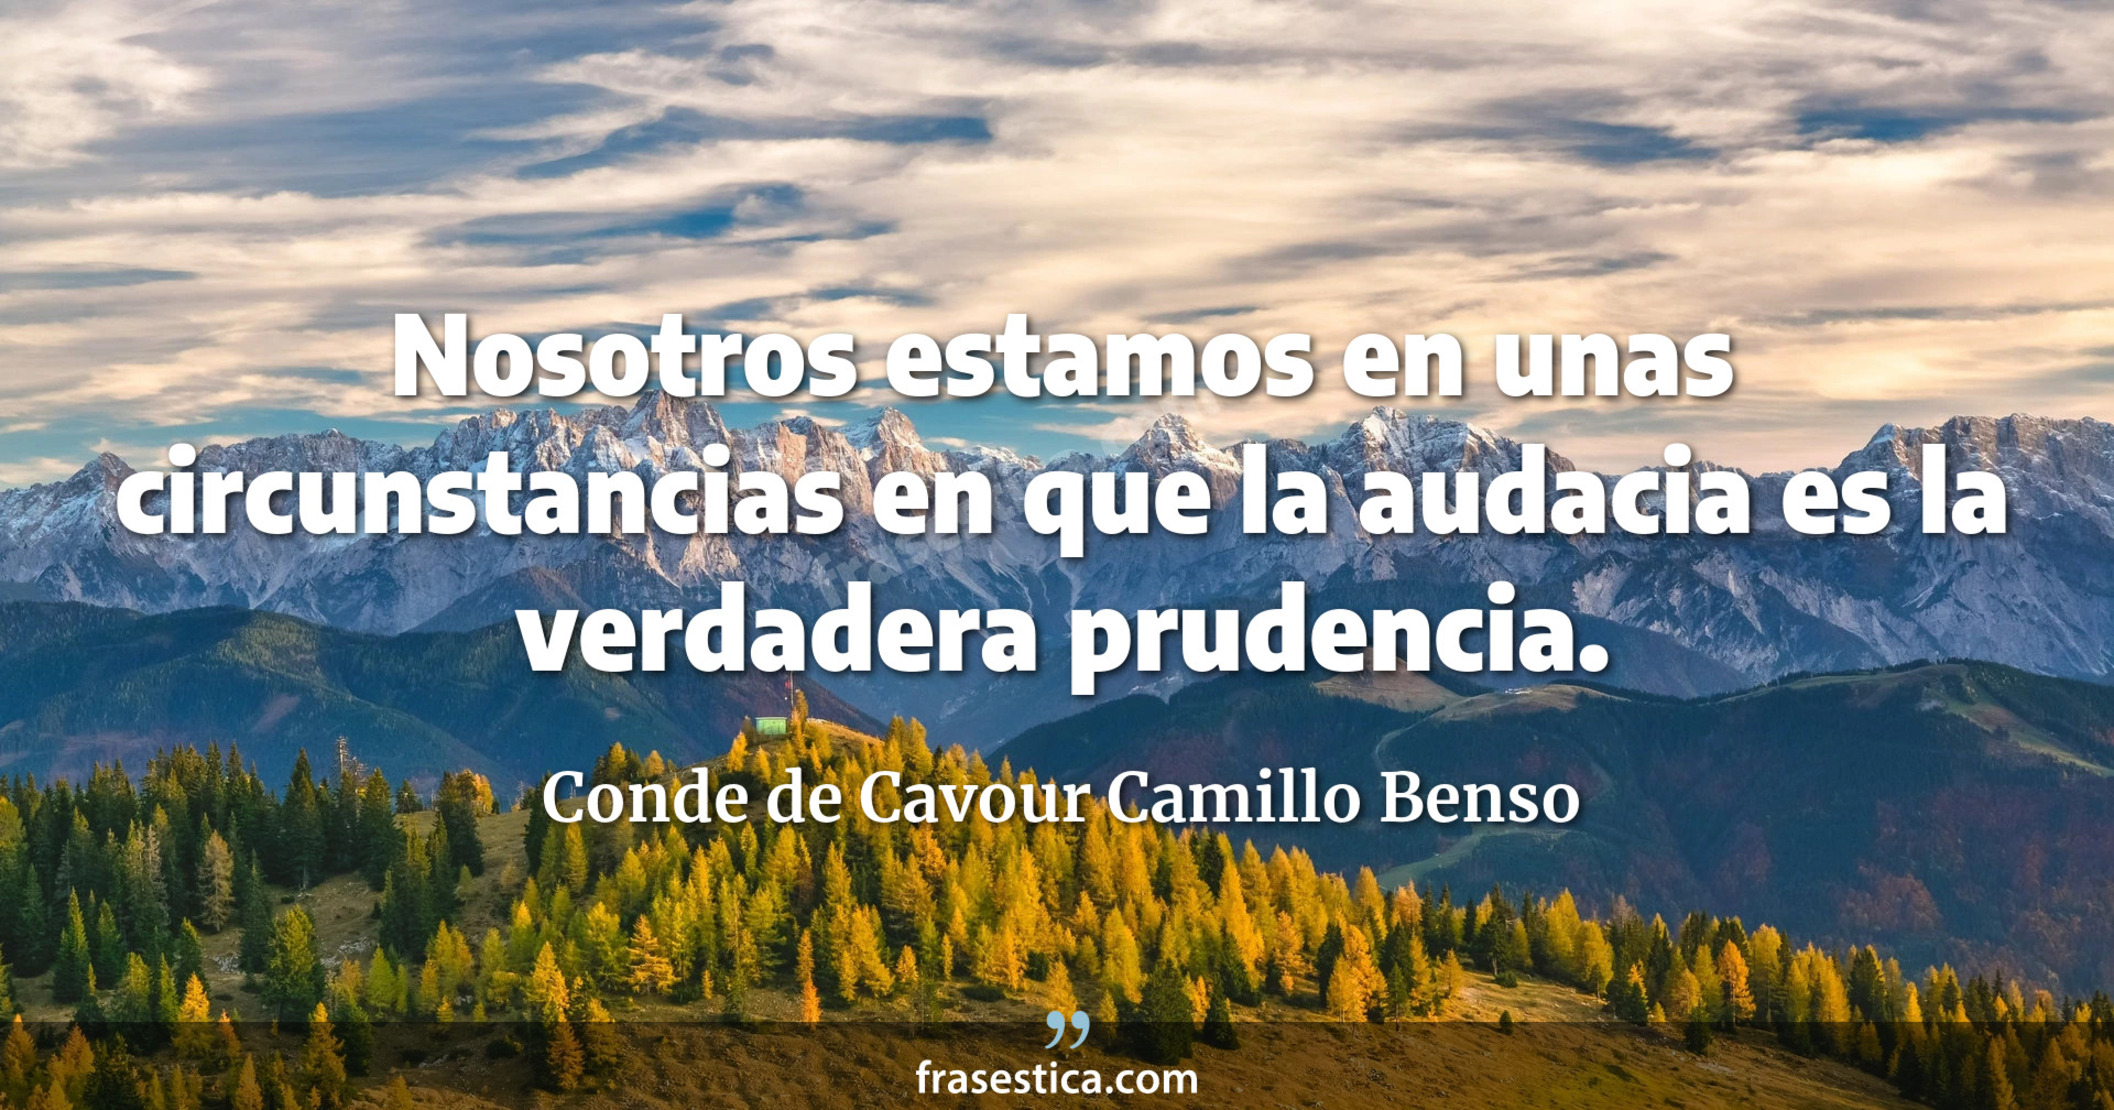 Nosotros estamos en unas circunstancias en que la audacia es la verdadera prudencia. - Conde de Cavour Camillo Benso